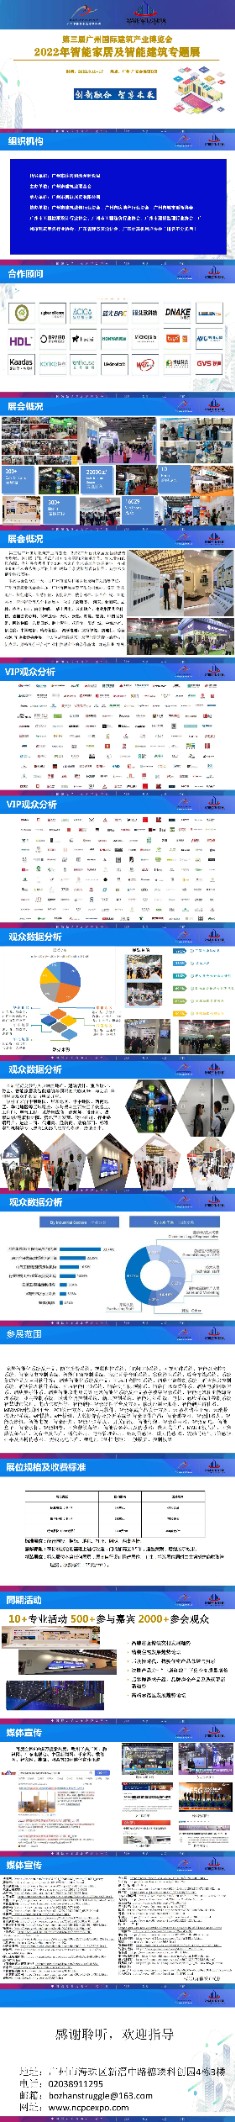 2022广州智能家居及智能建筑博览会展最终版_00.jpg